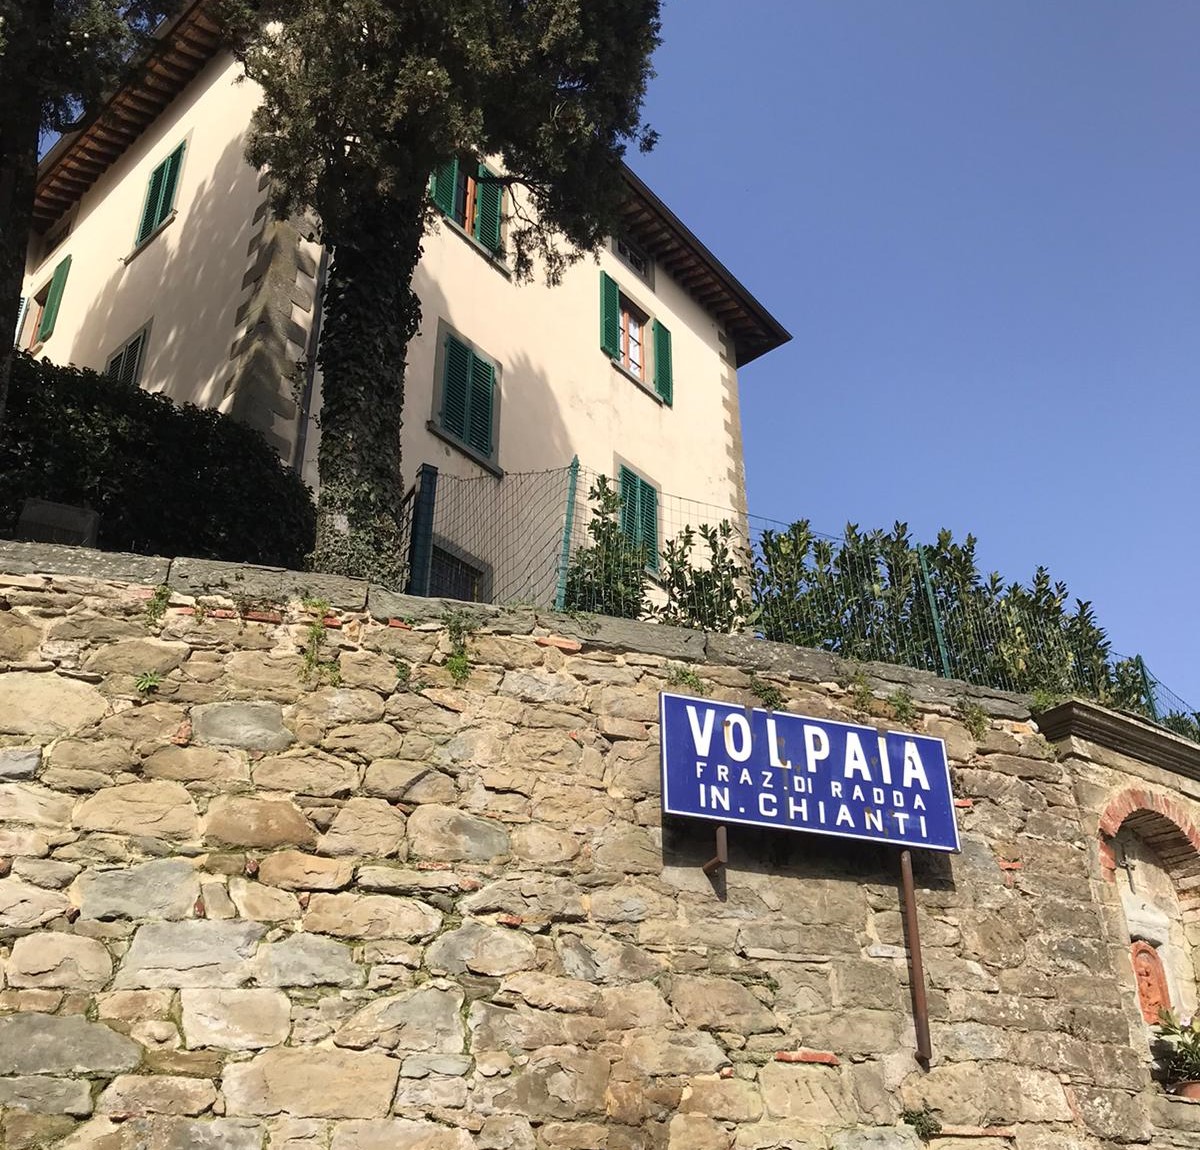 Volpaia: un piccolo borgo, una storia affascinante